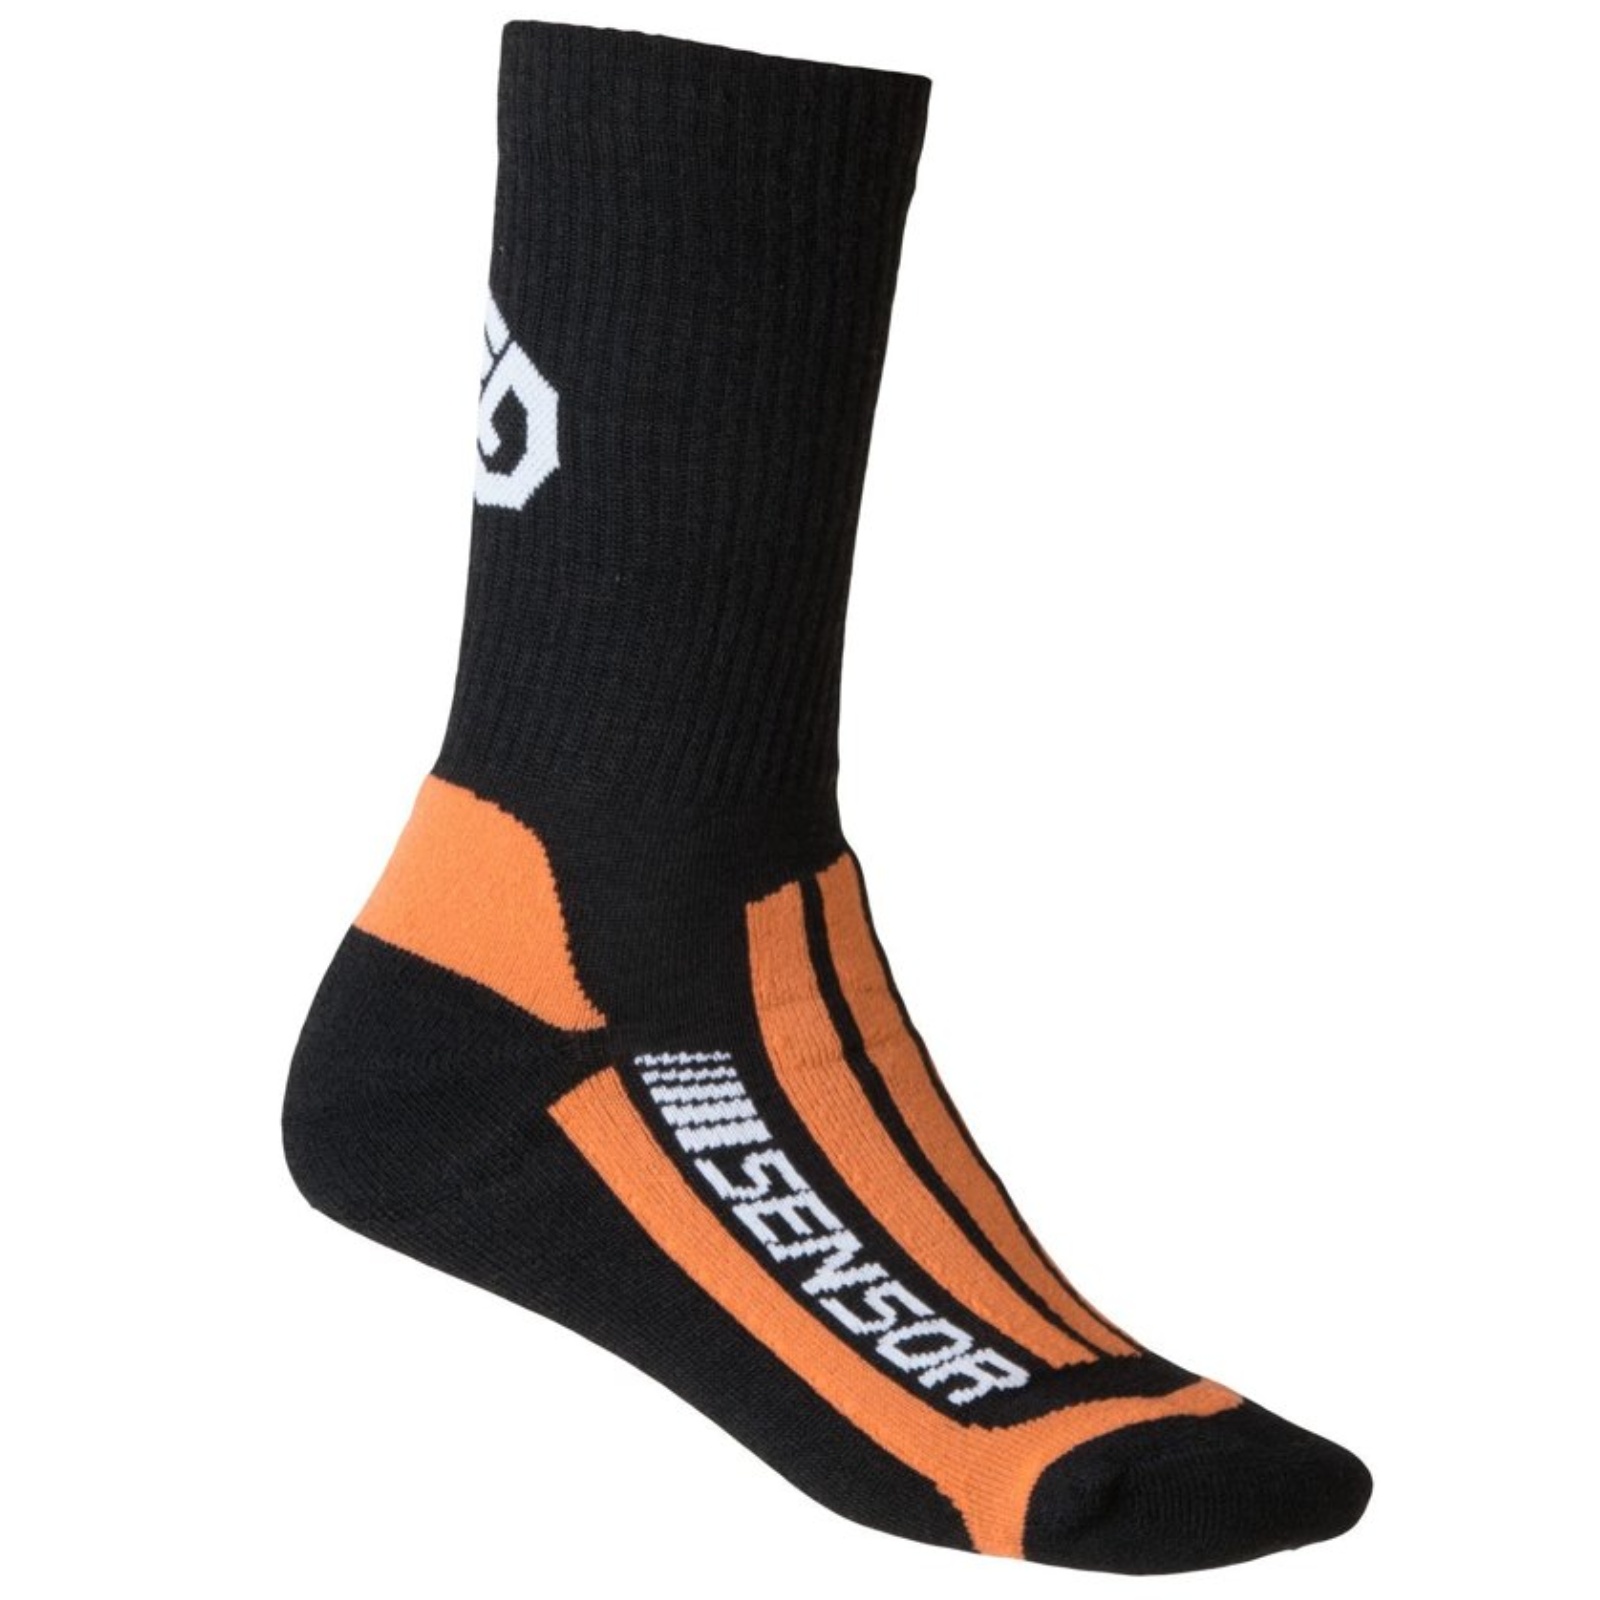 Ponožky SENSOR Treking Merino černo-oranžové - vel. 6-8